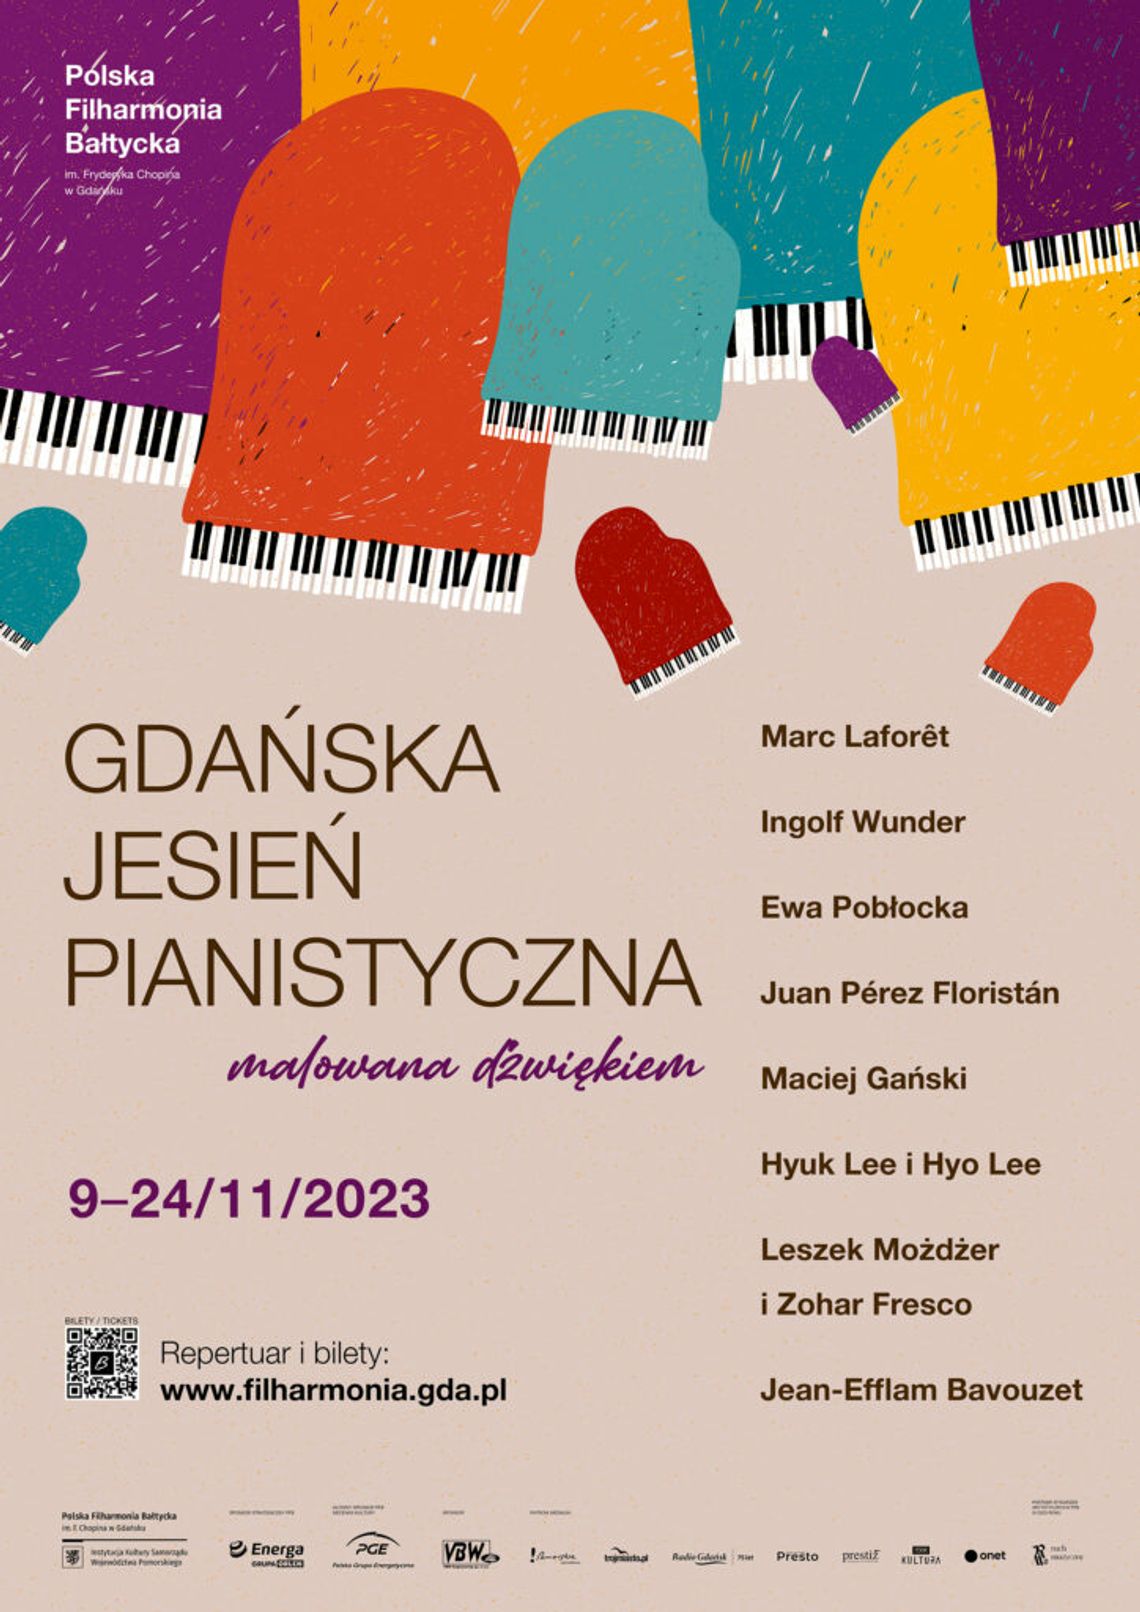 Dzisiaj rozpoczyna się Gdańska Jesień Pianistyczna